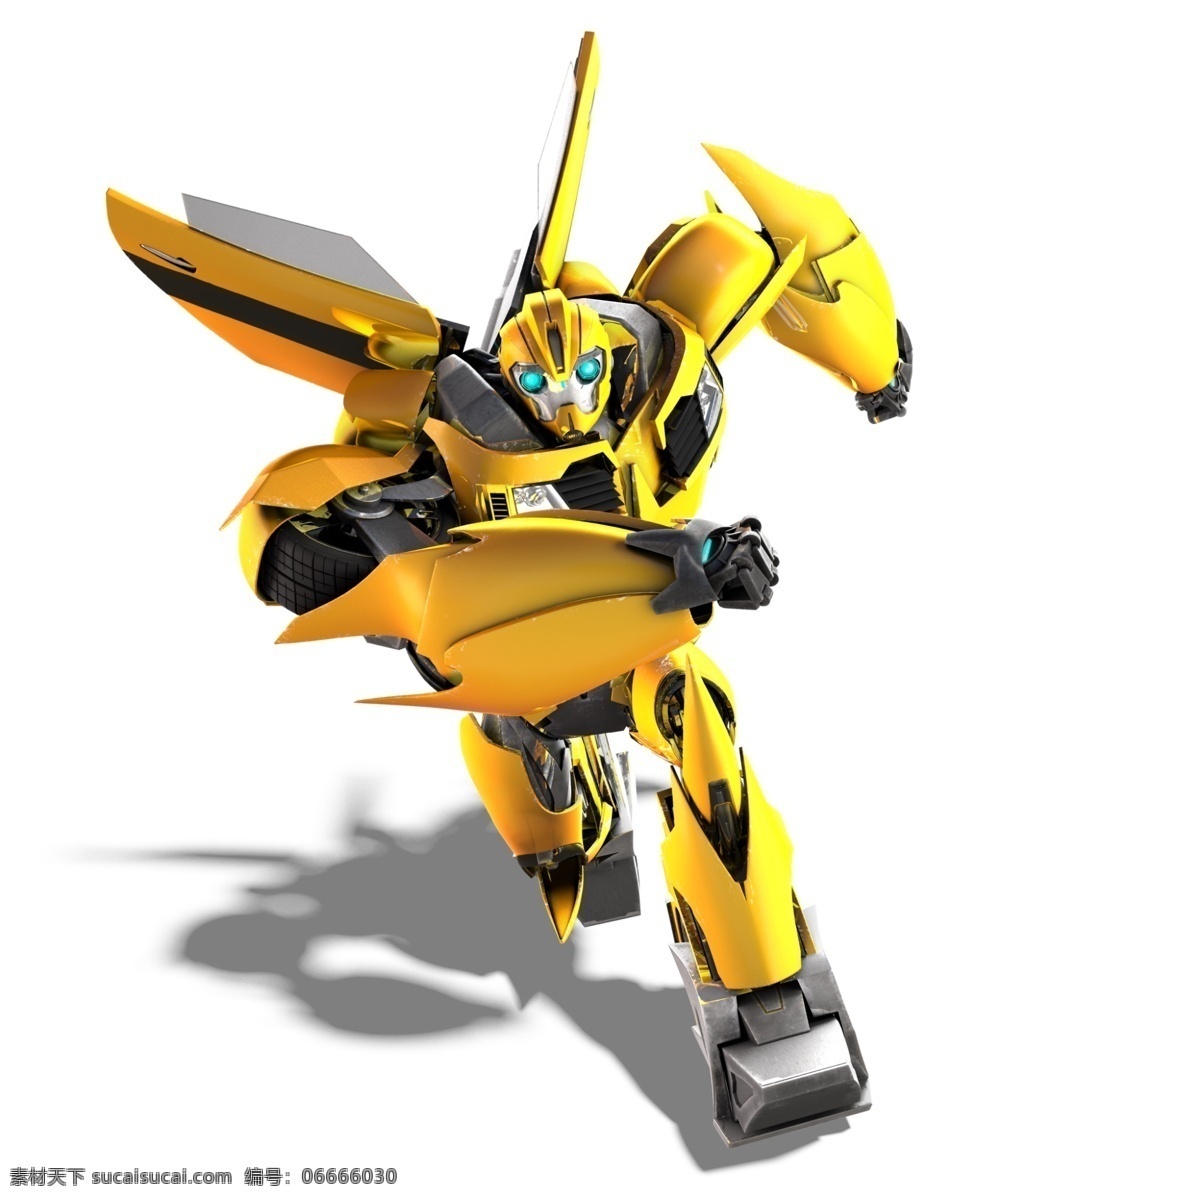 大黄蜂 变形精钢 科幻 奔跑 玩具 模型 电影 动漫动画 动漫人物